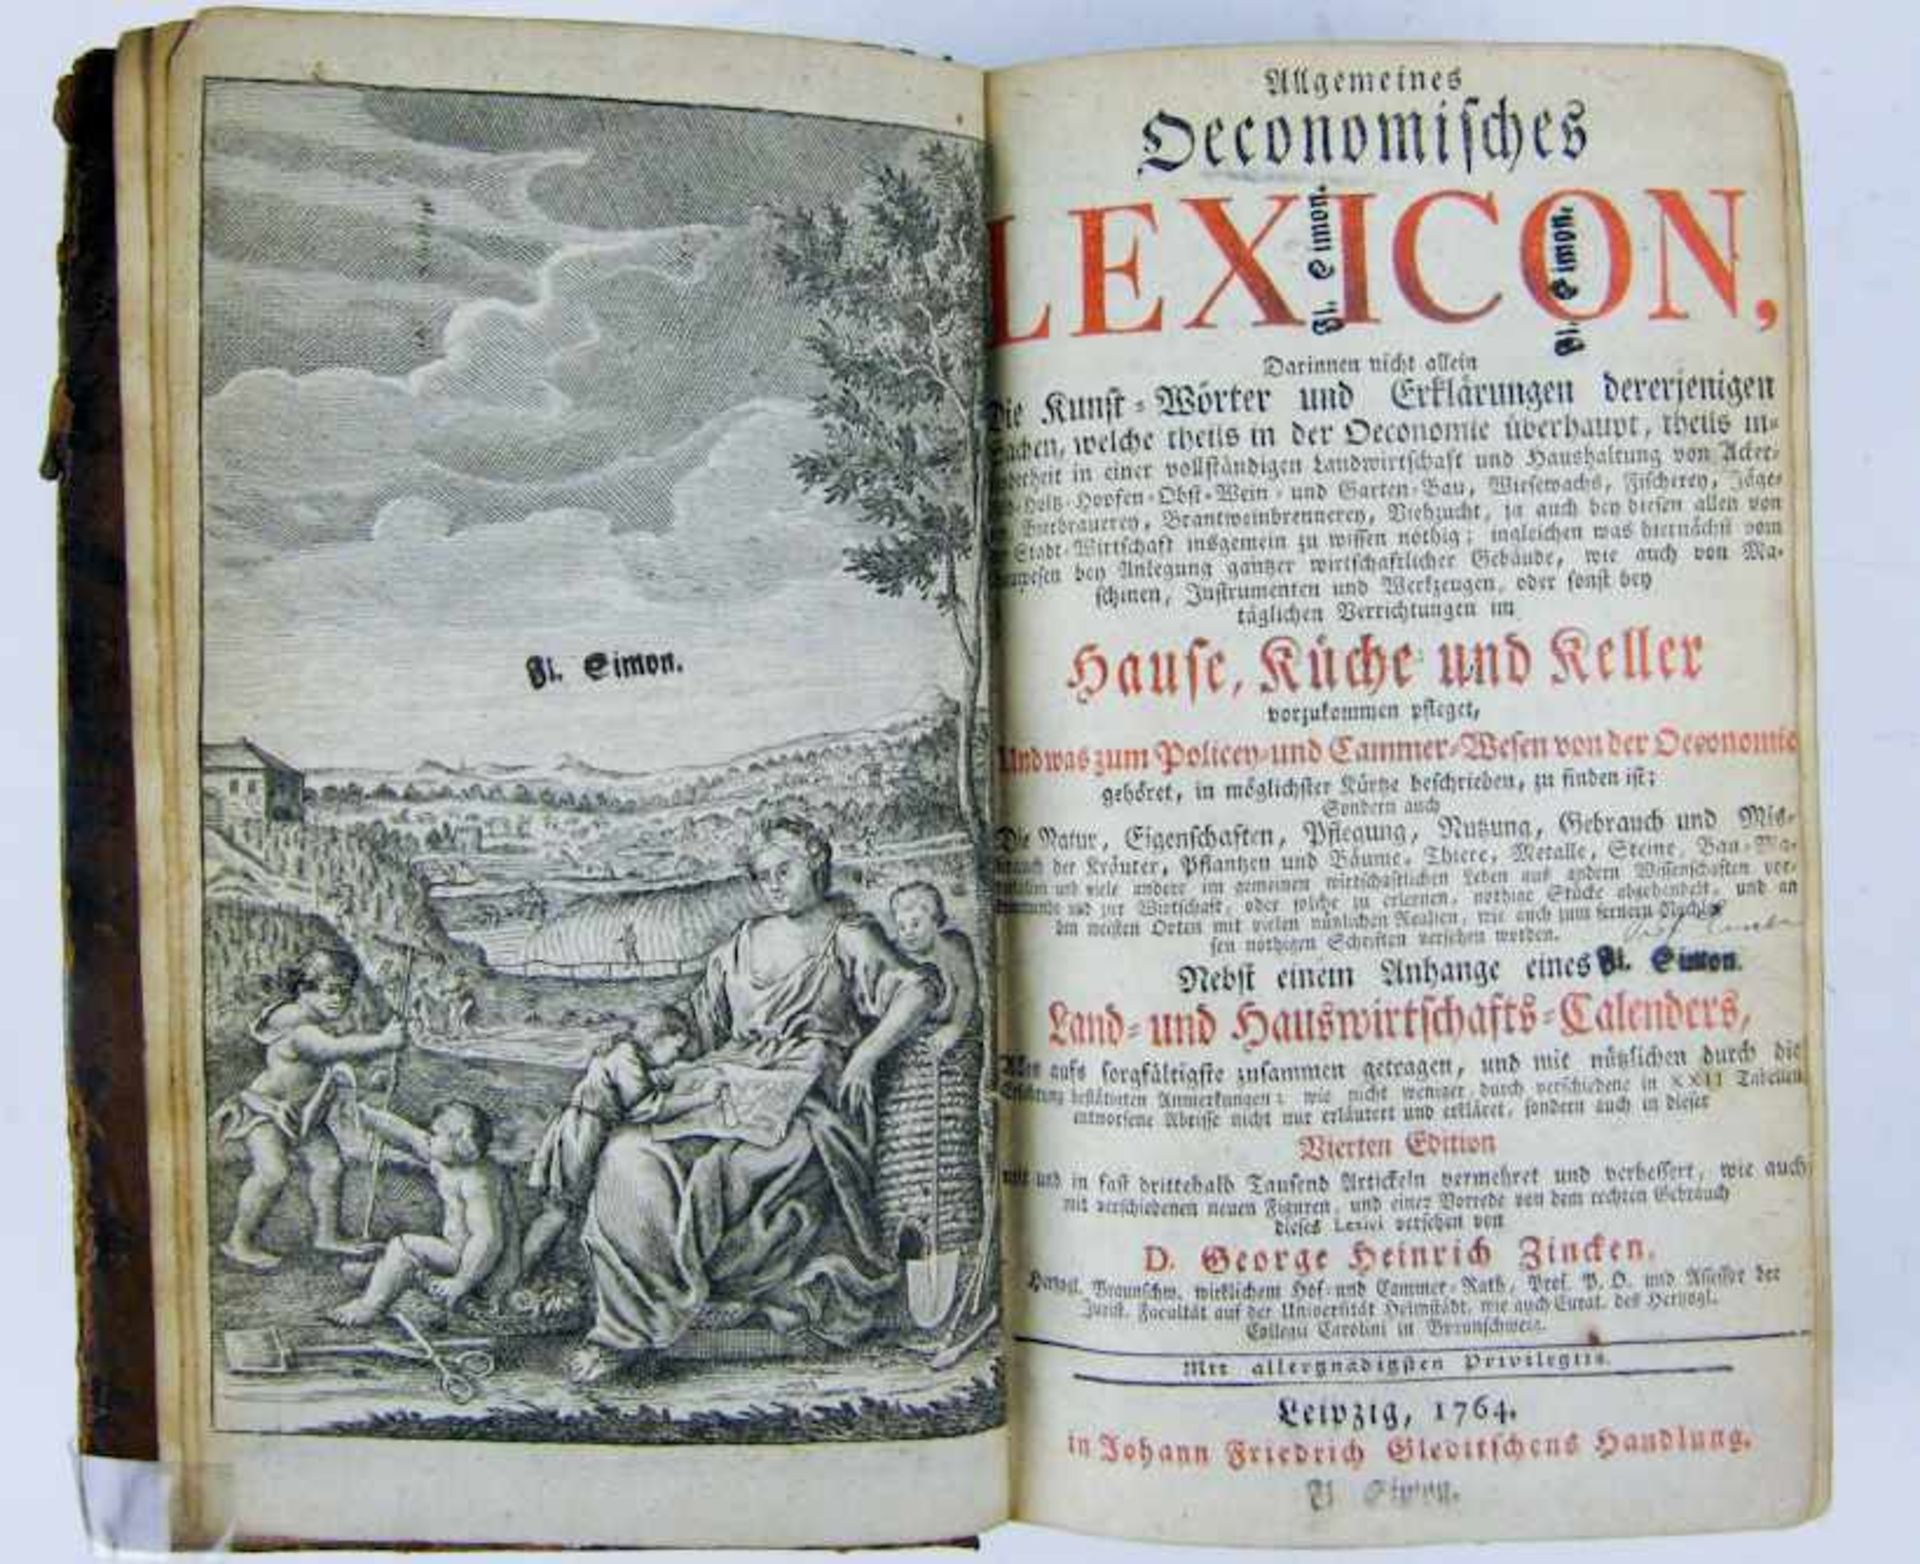 Zincke, G. H.Allgemeines Oeconomisches Lexicon ...Verl. Gleditschens, Leipzig 1764. Frontispiz, 22